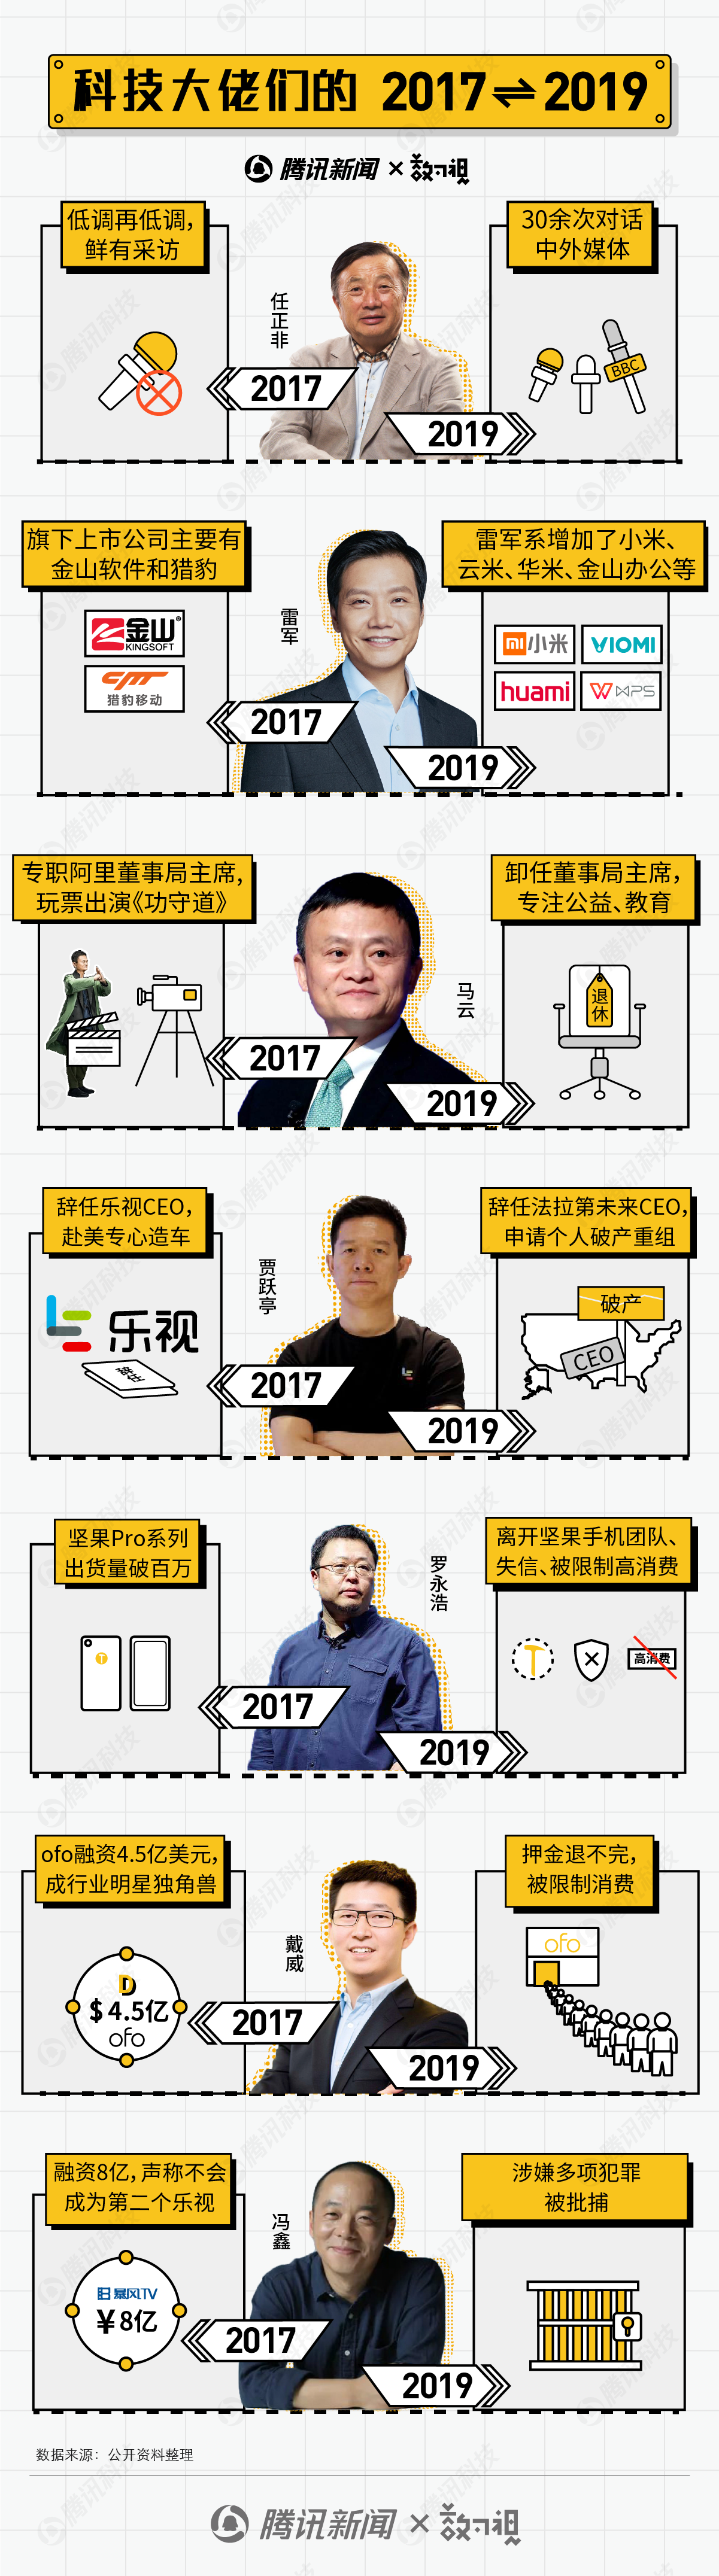 雷军、马云、任正非...科技大佬们的“2017-2019”朋友圈怎么发